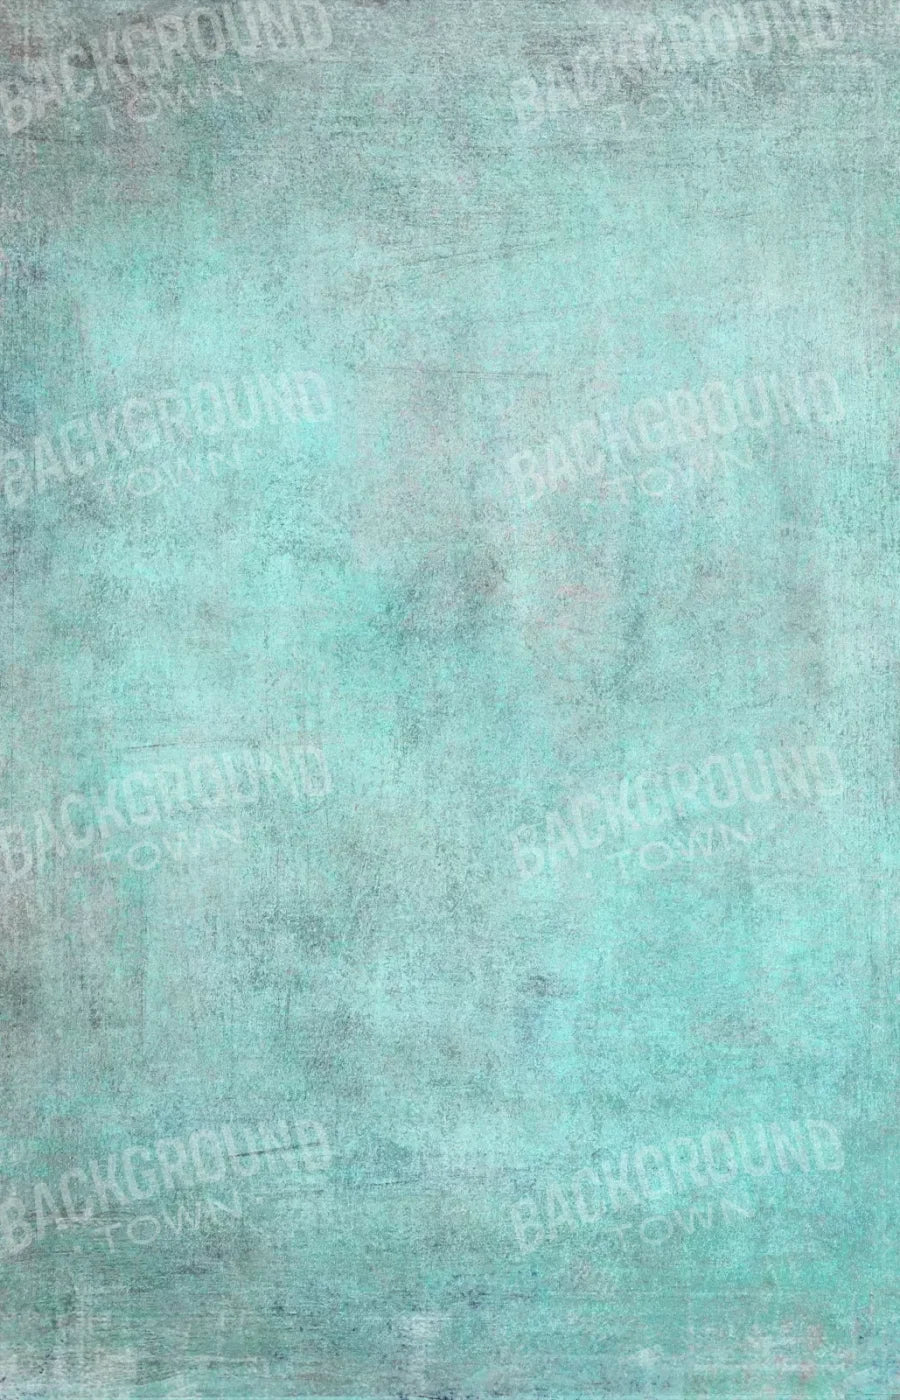 Grunge Seafoam 8X12 Ultracloth ( 96 X 144 Inch ) Backdrop